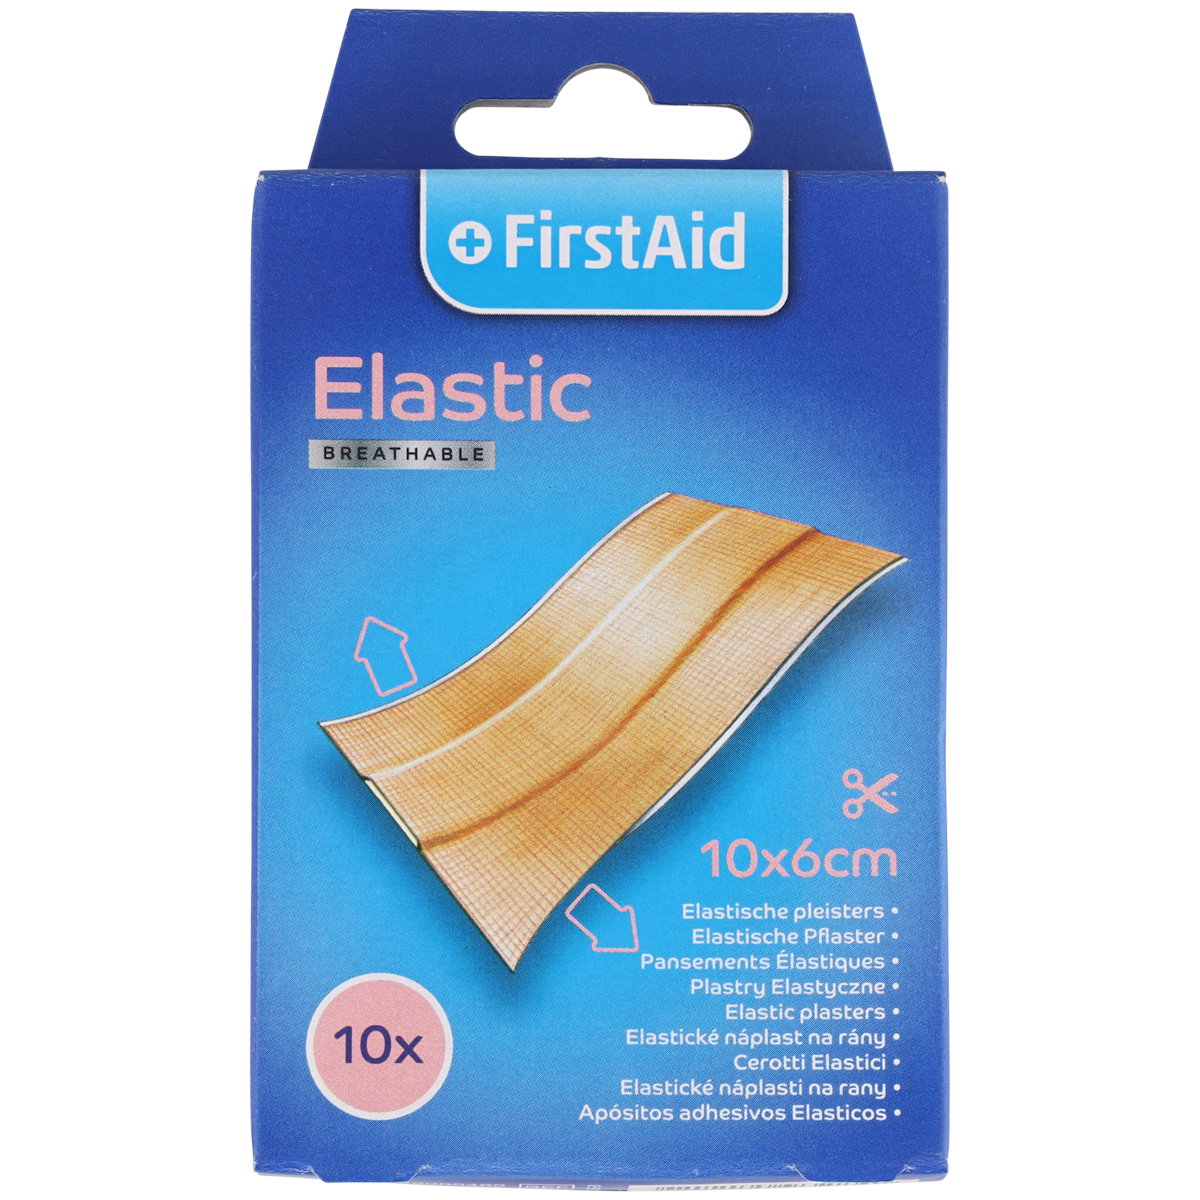 First Aid elastische pleisters